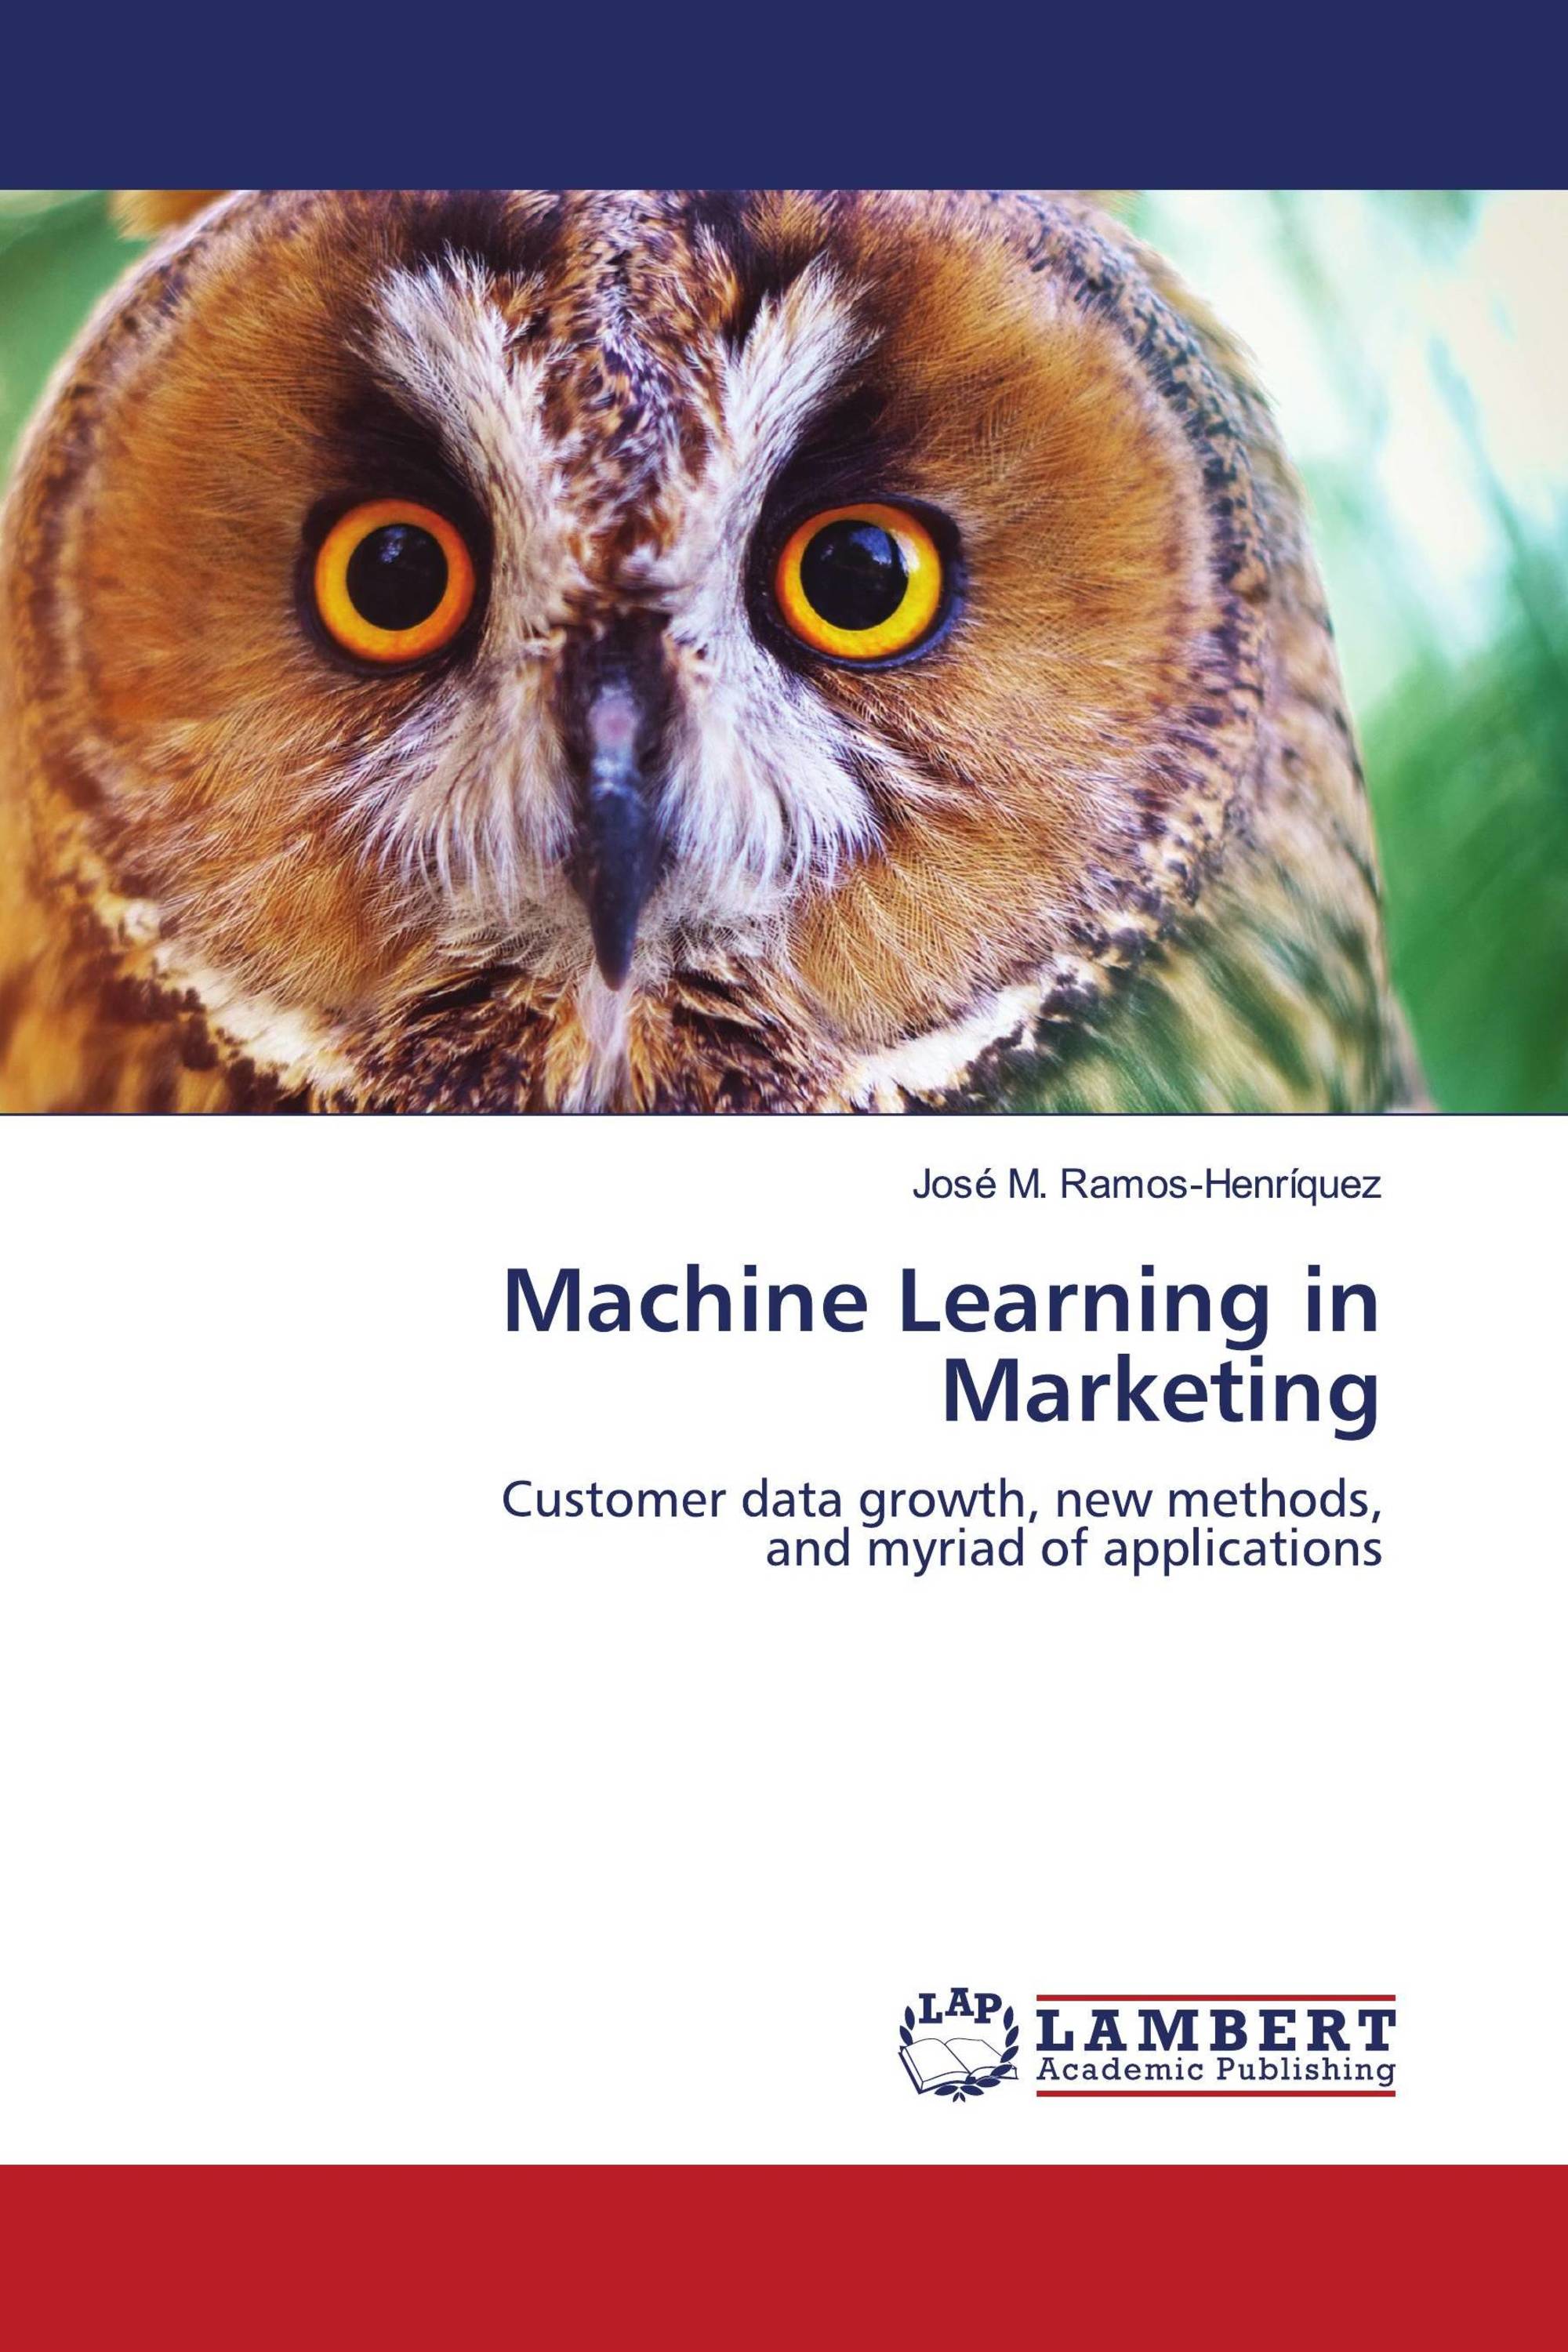 case study machine learning marketing